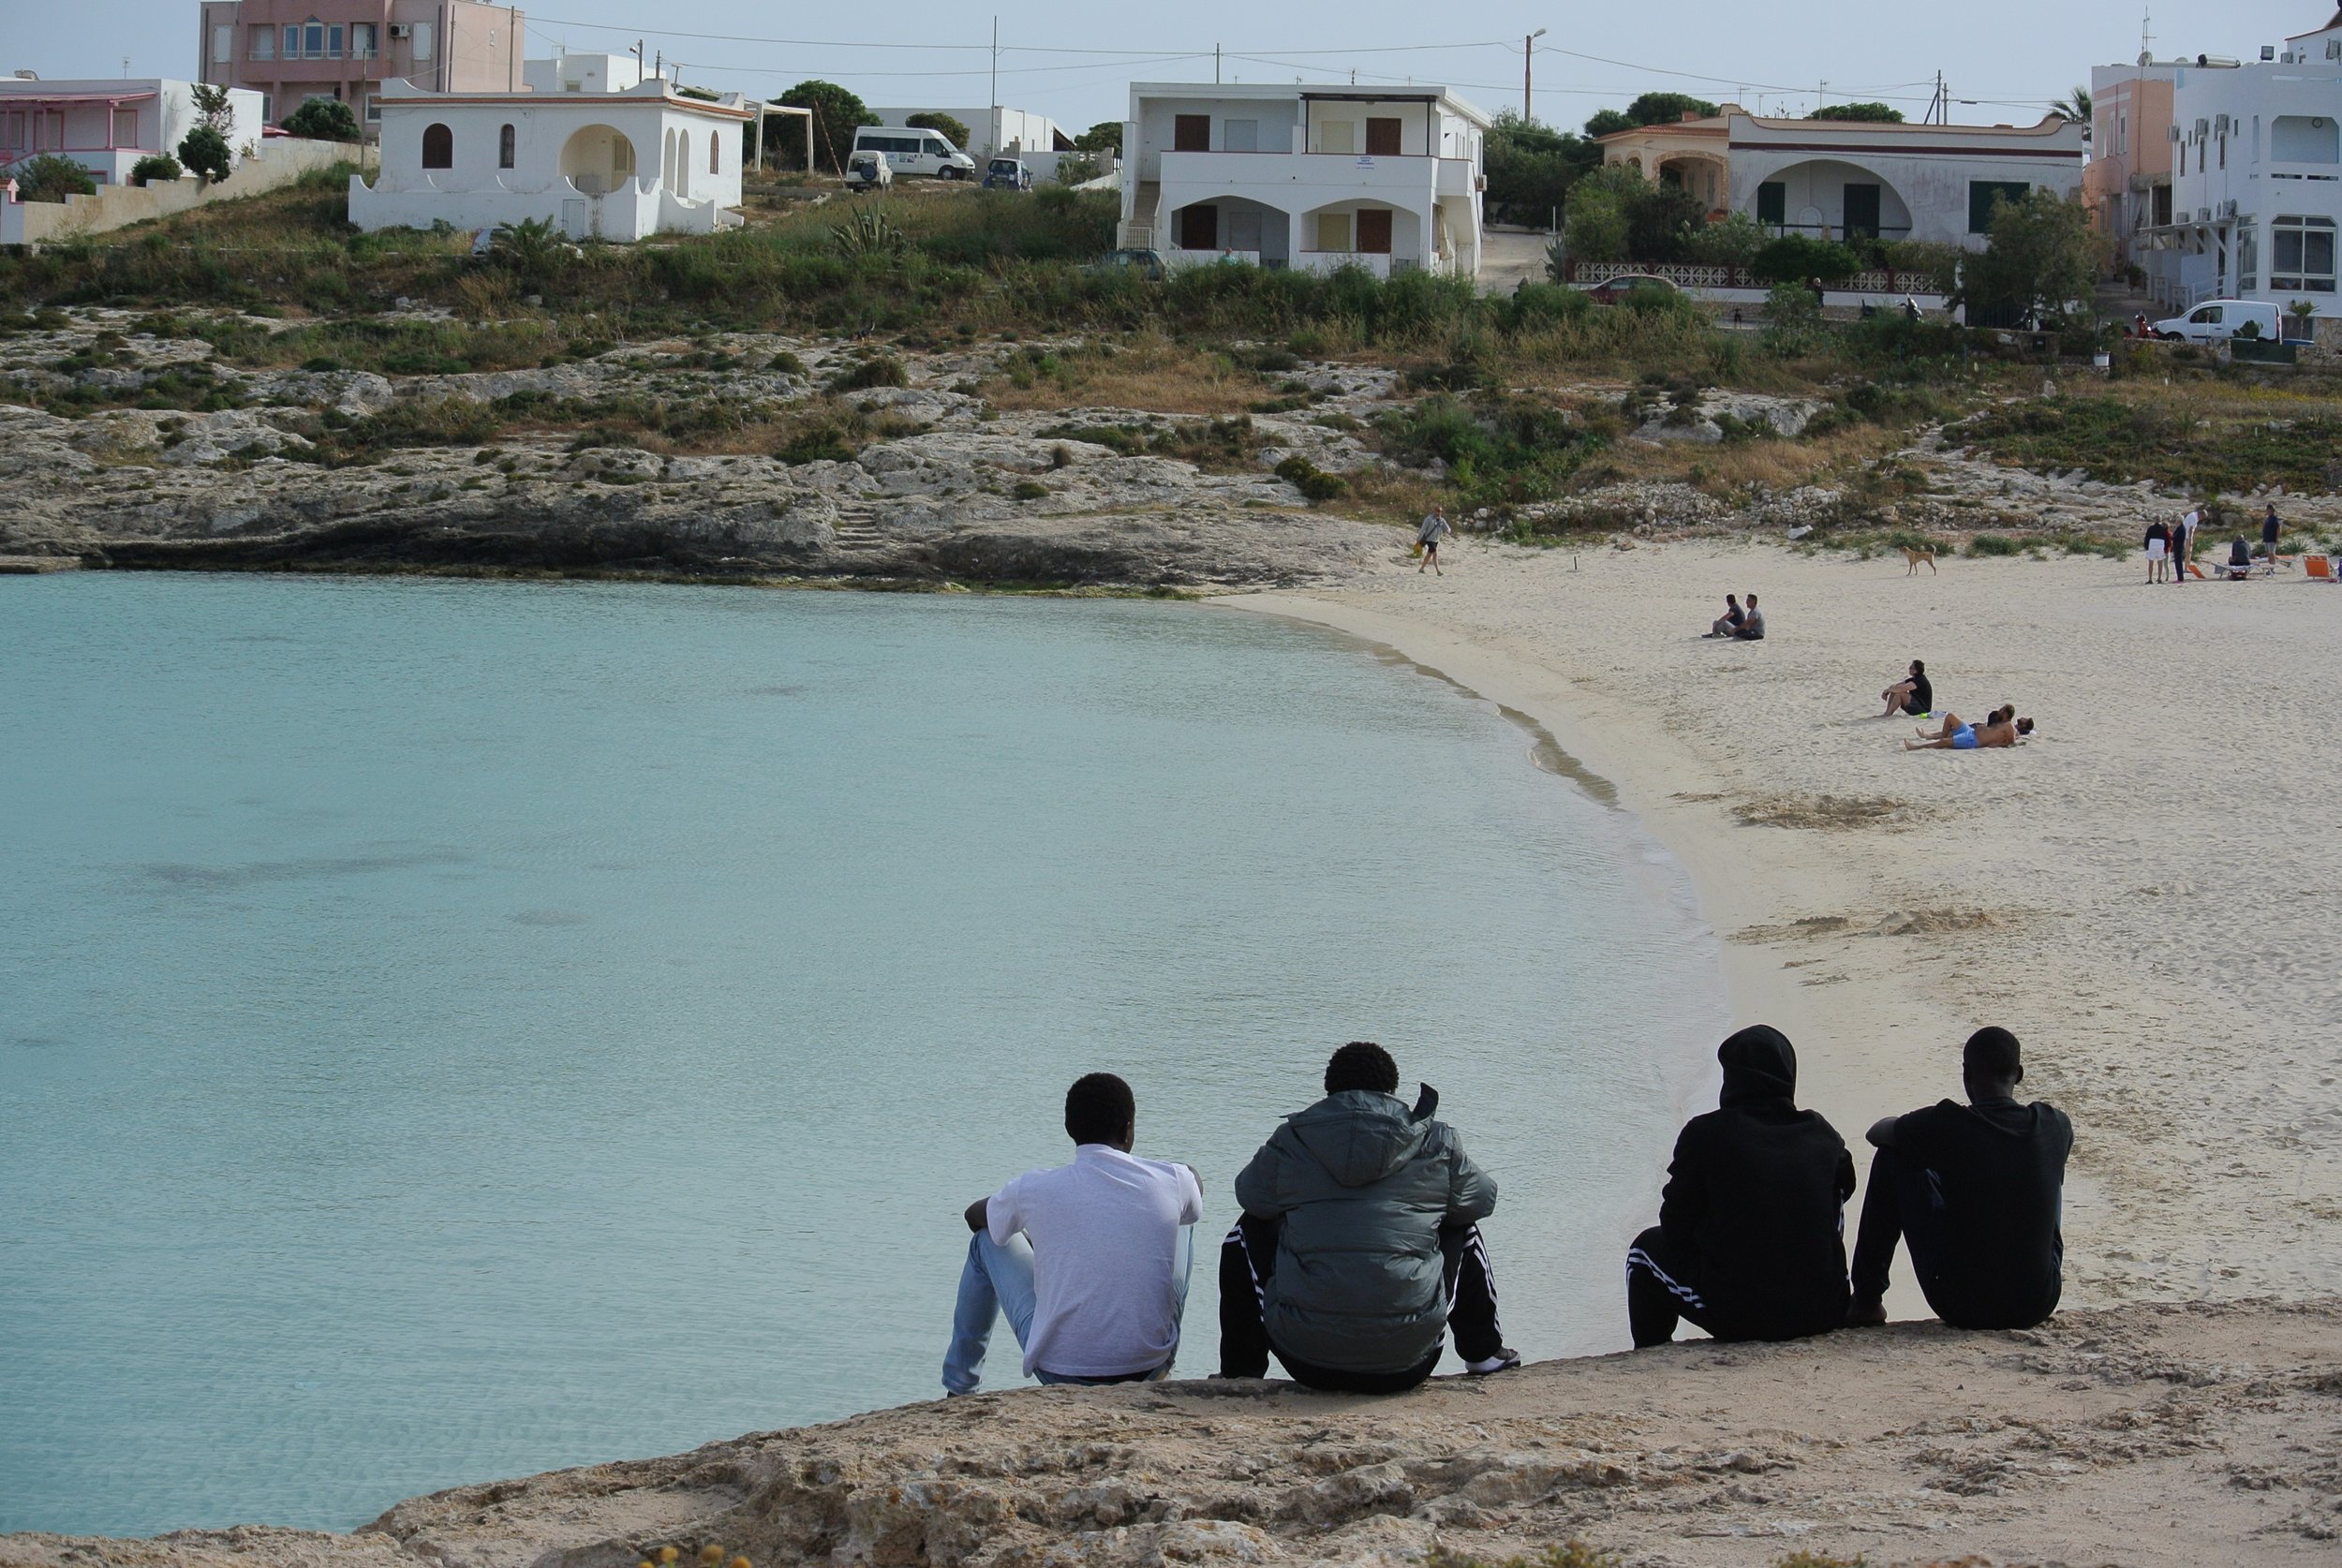   Lampedusa, Italy, Apr-May, 2017.   ©Pamela Kerpius/Migrants of the Mediterranean  